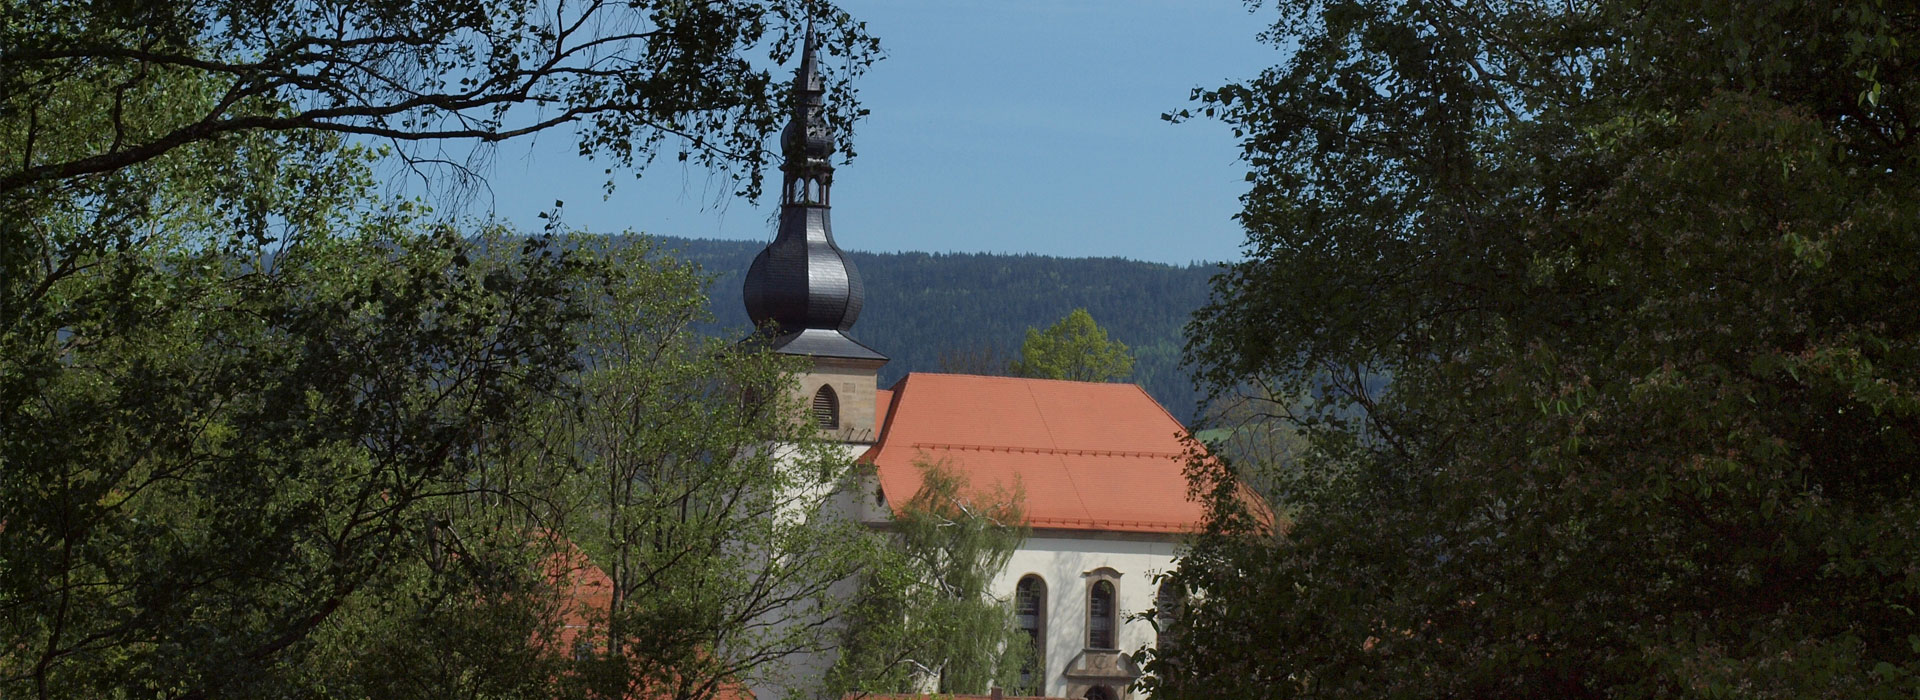 Blick auf die Kirche St. Michael Gurtstein